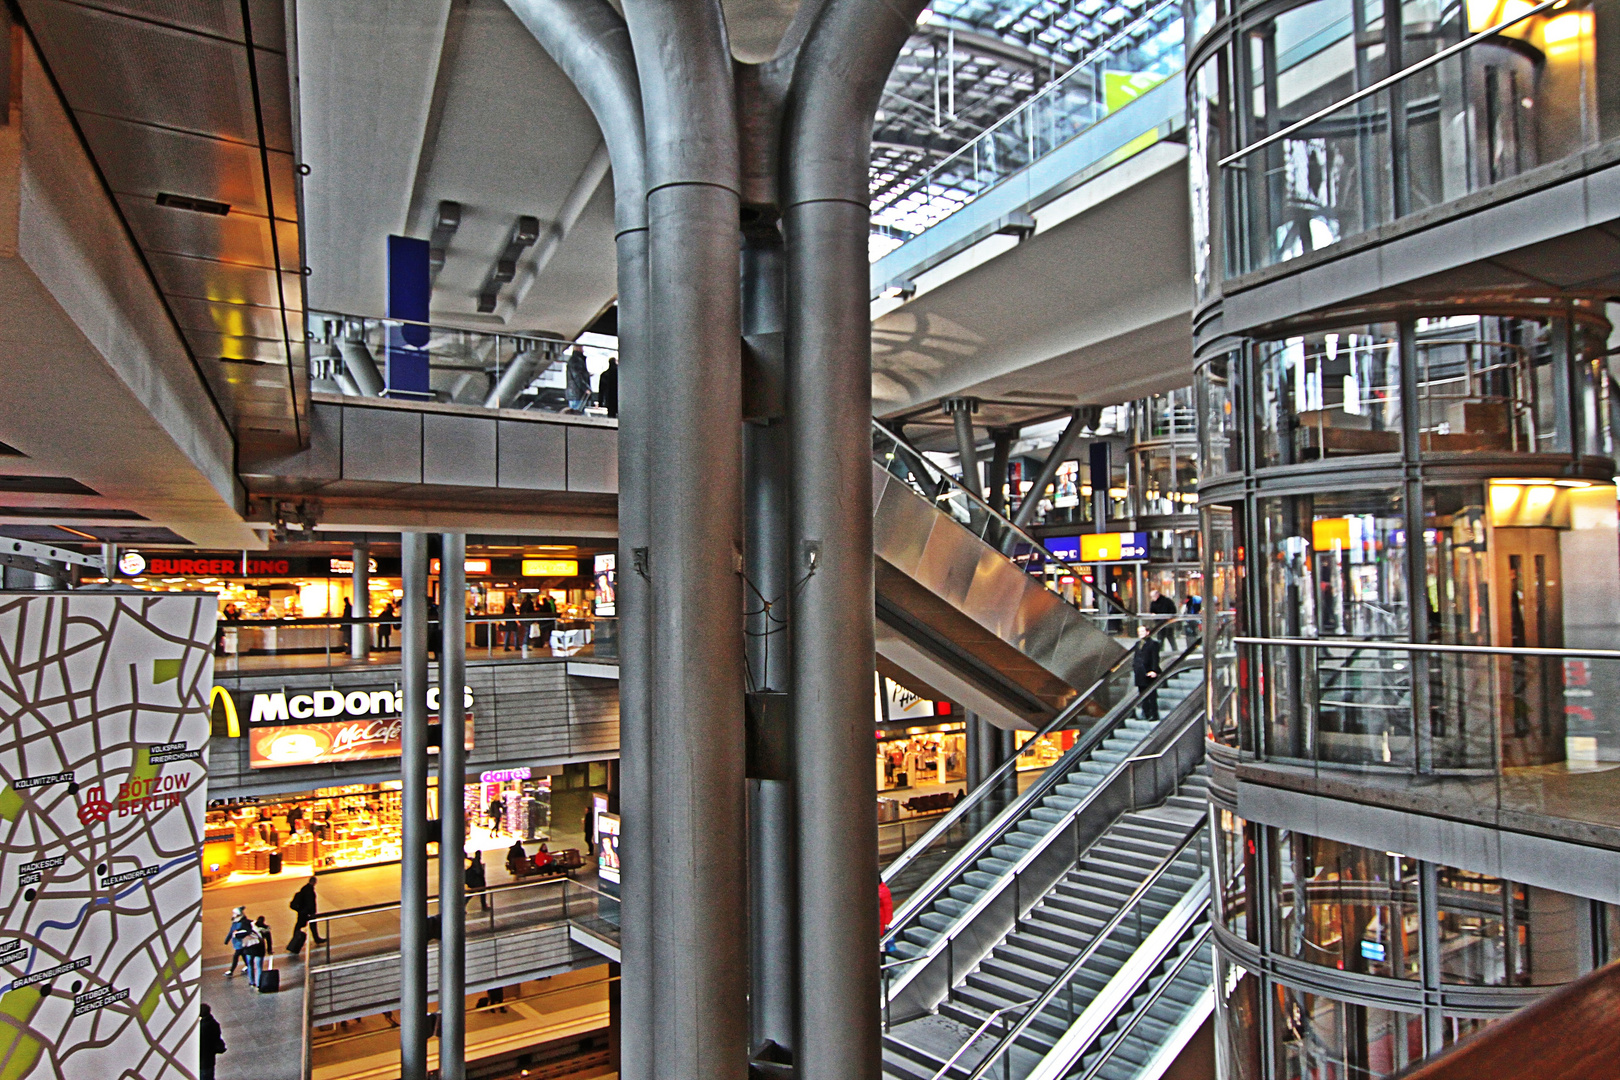 Hauptbahnhof 2